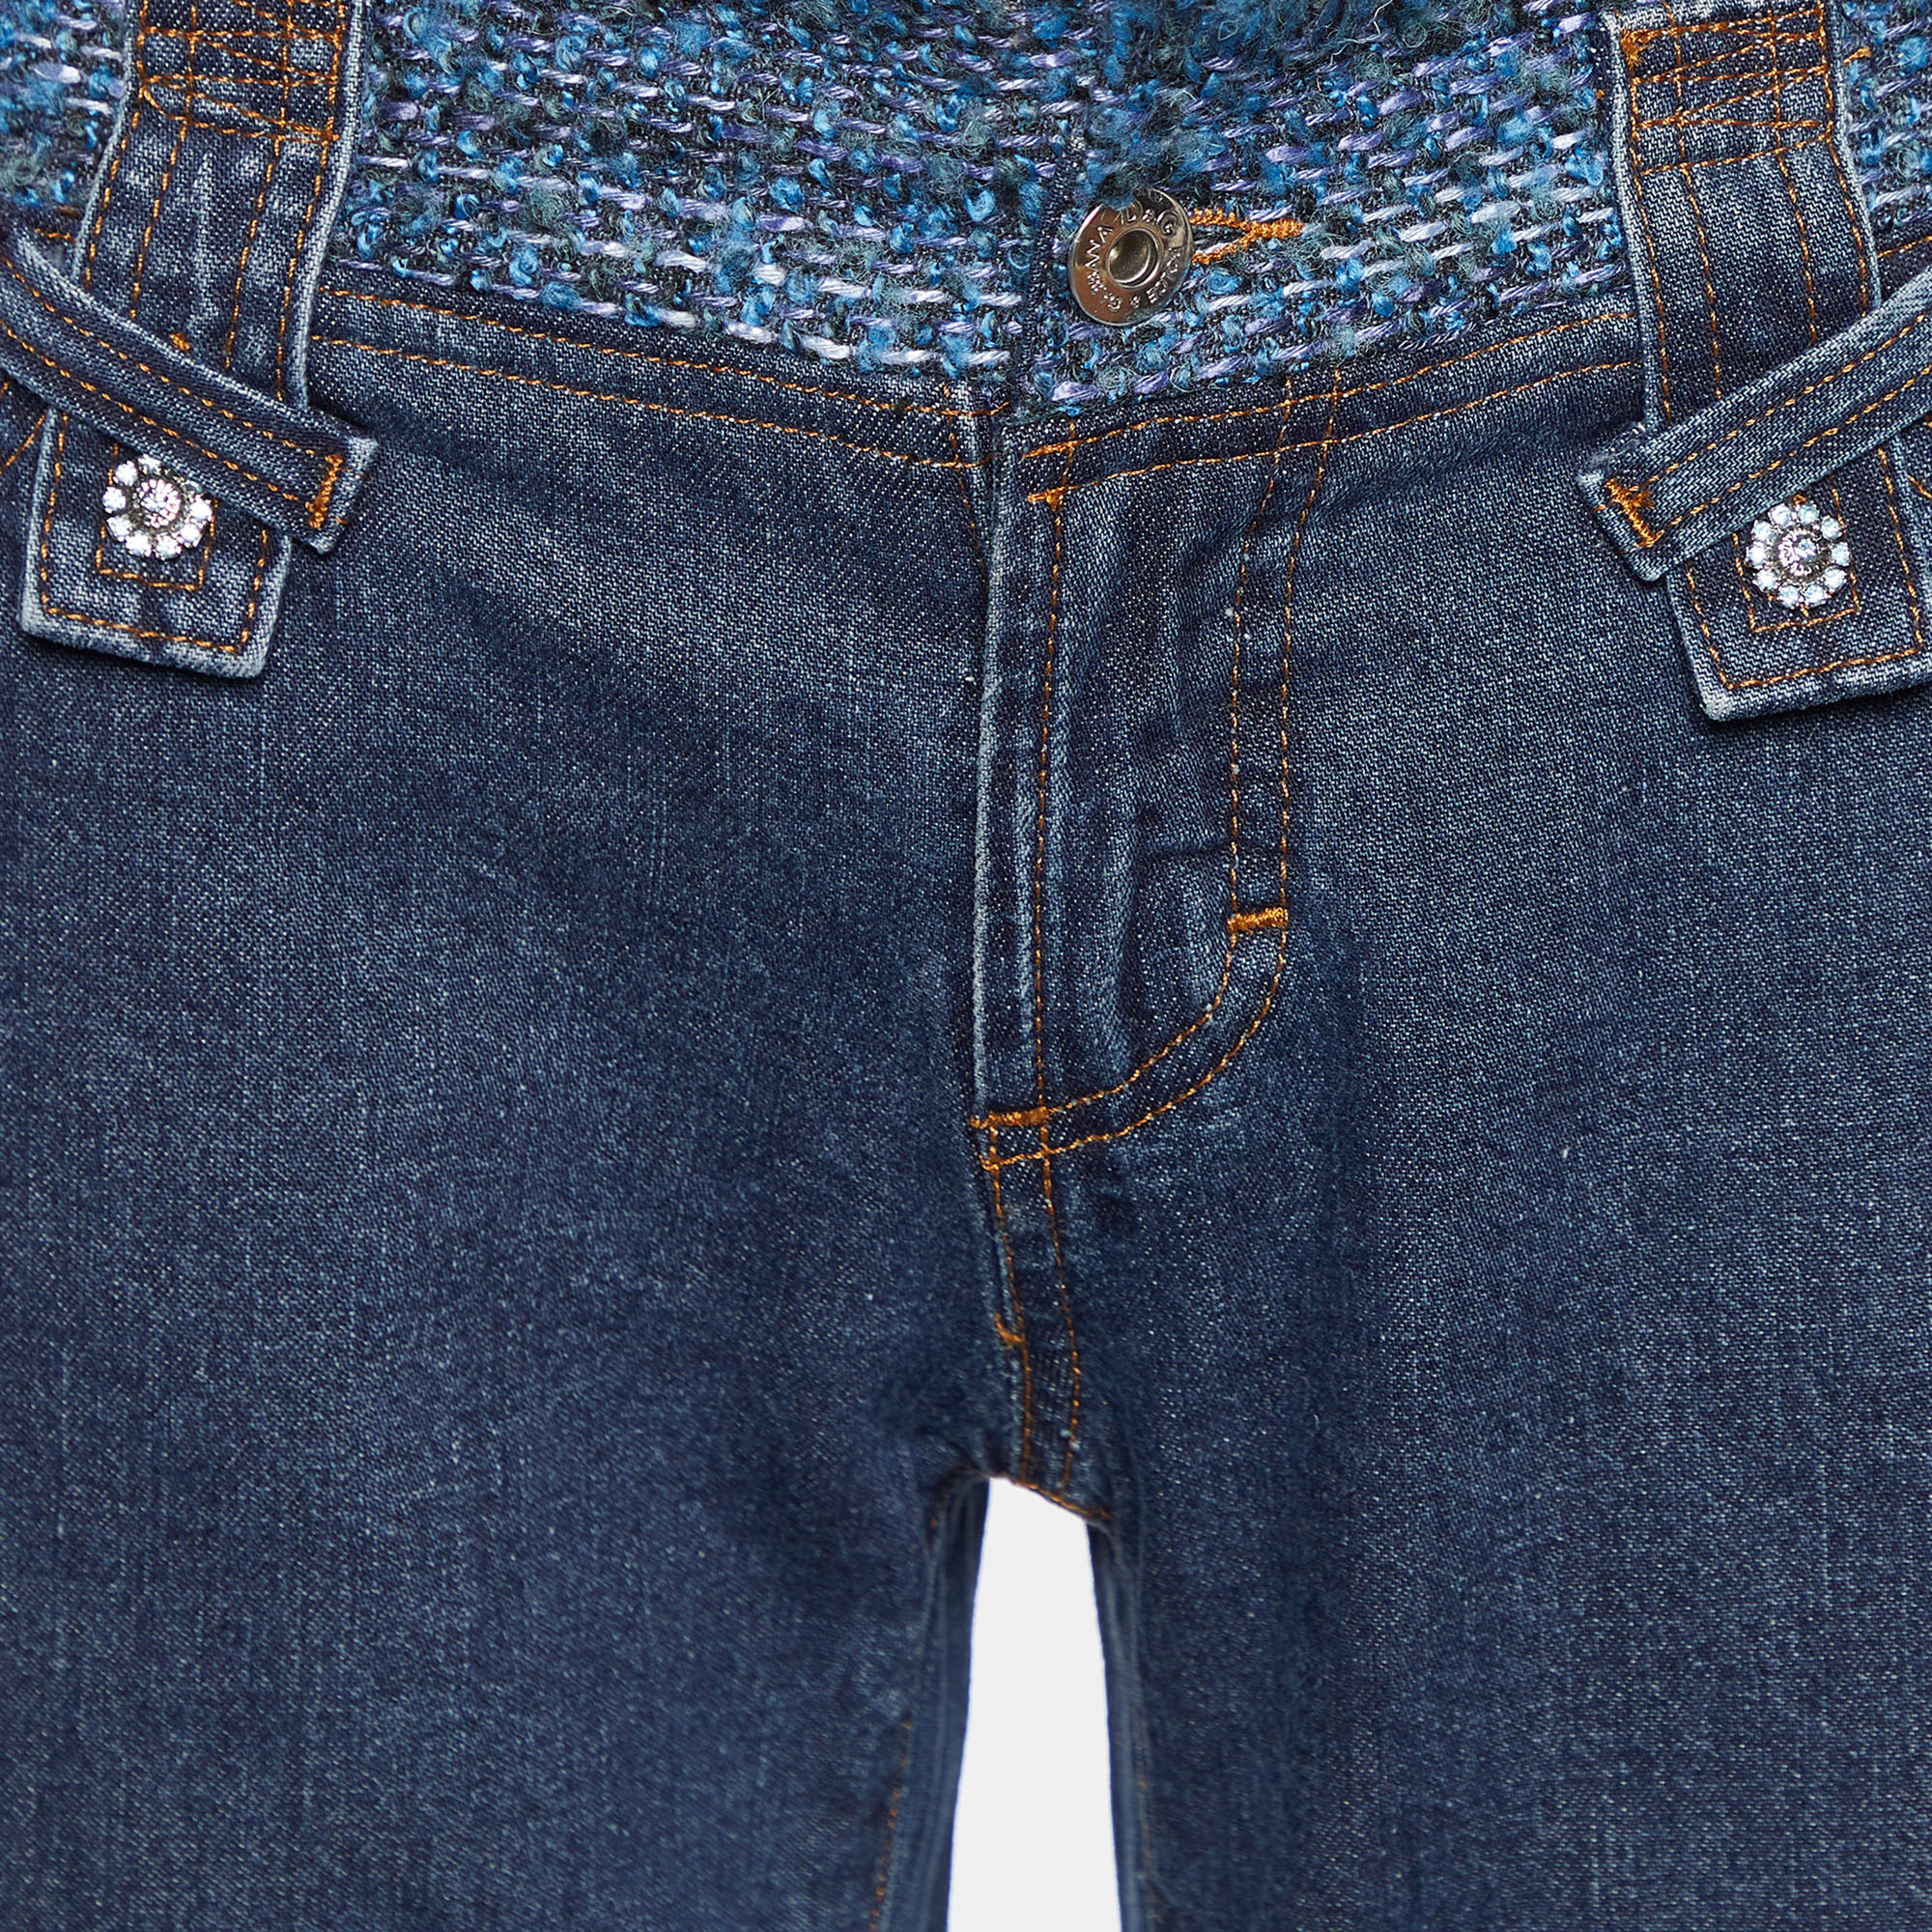 D&G Navy Blue Denim Tweed Waist Detail Flared Jeans M Waist 33